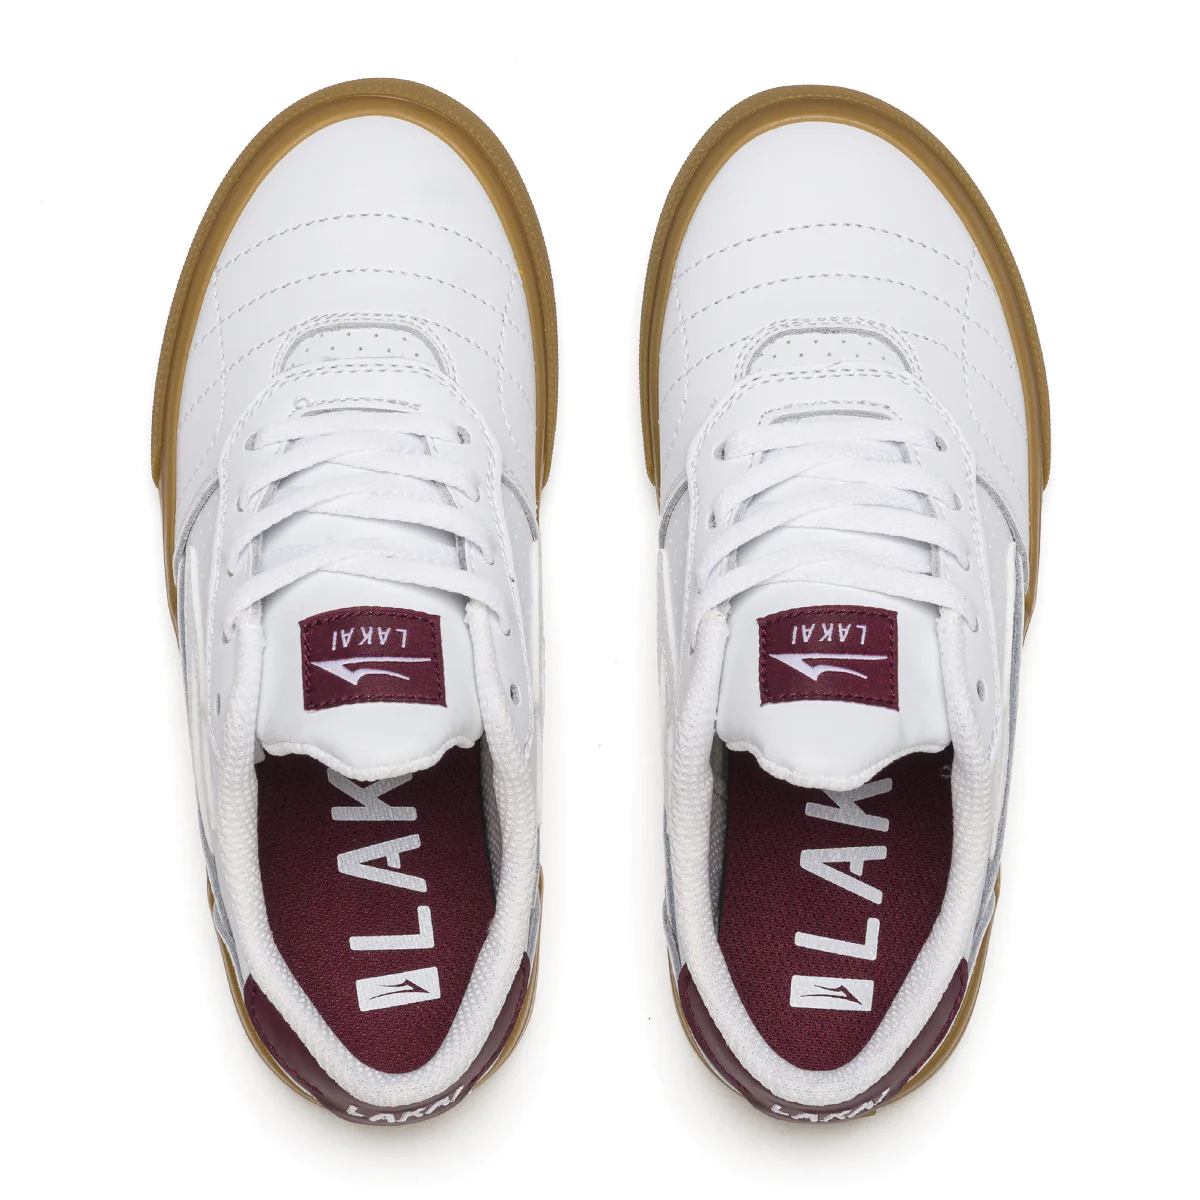 Lakai Youth Cambridge Shoes - White/Burgundy Leather